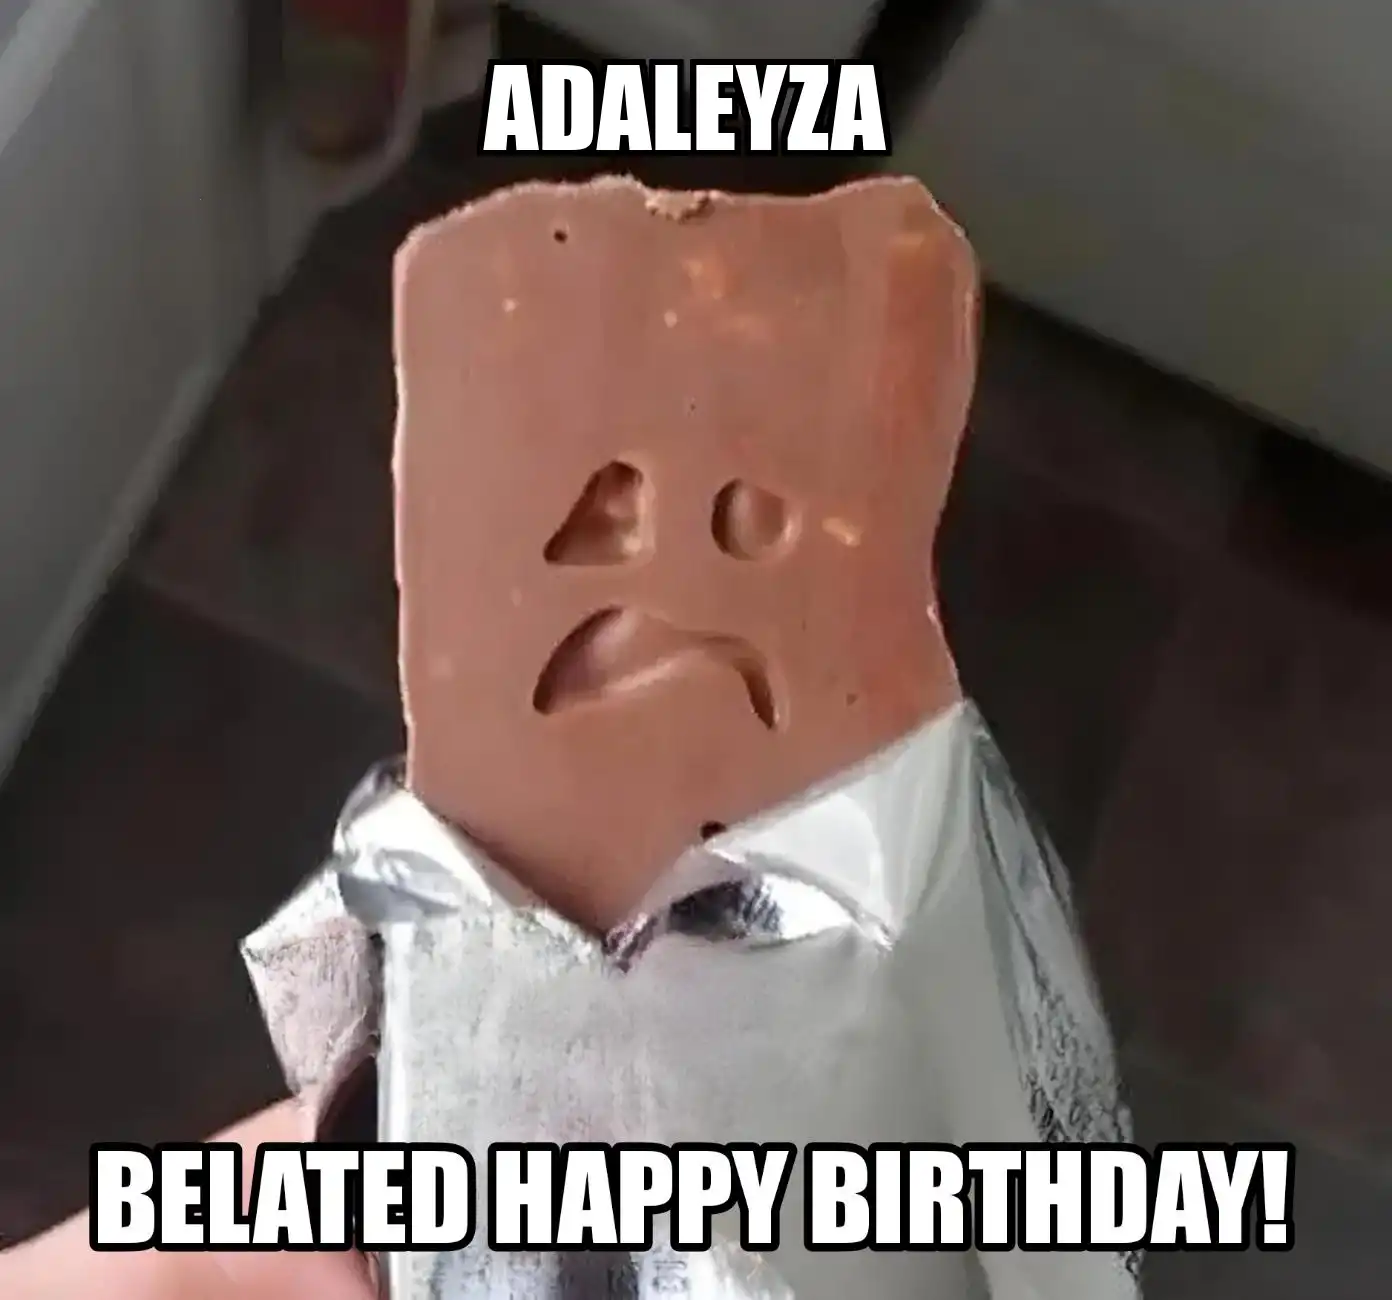 Happy Birthday Adaleyza Belated Happy Birthday Meme